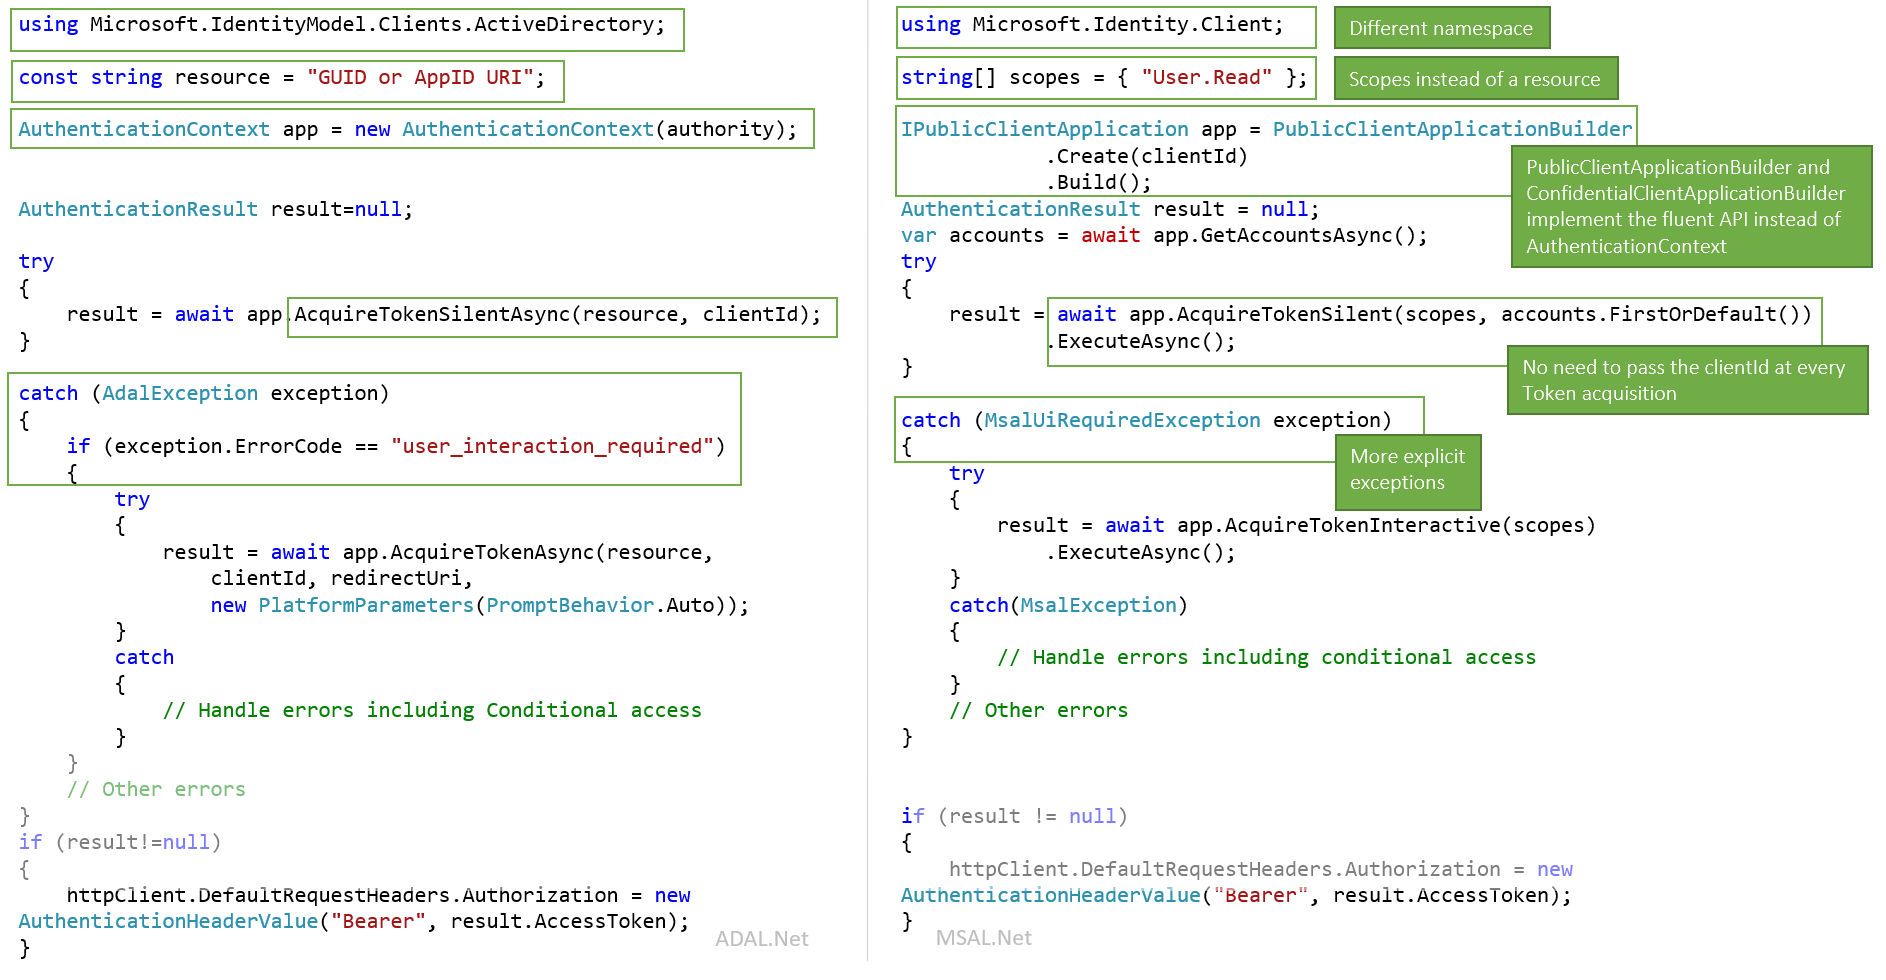 Capture d’écran montrant certaines des différences entre ADAL.NET et MSAL.NET pour une application cliente publique.